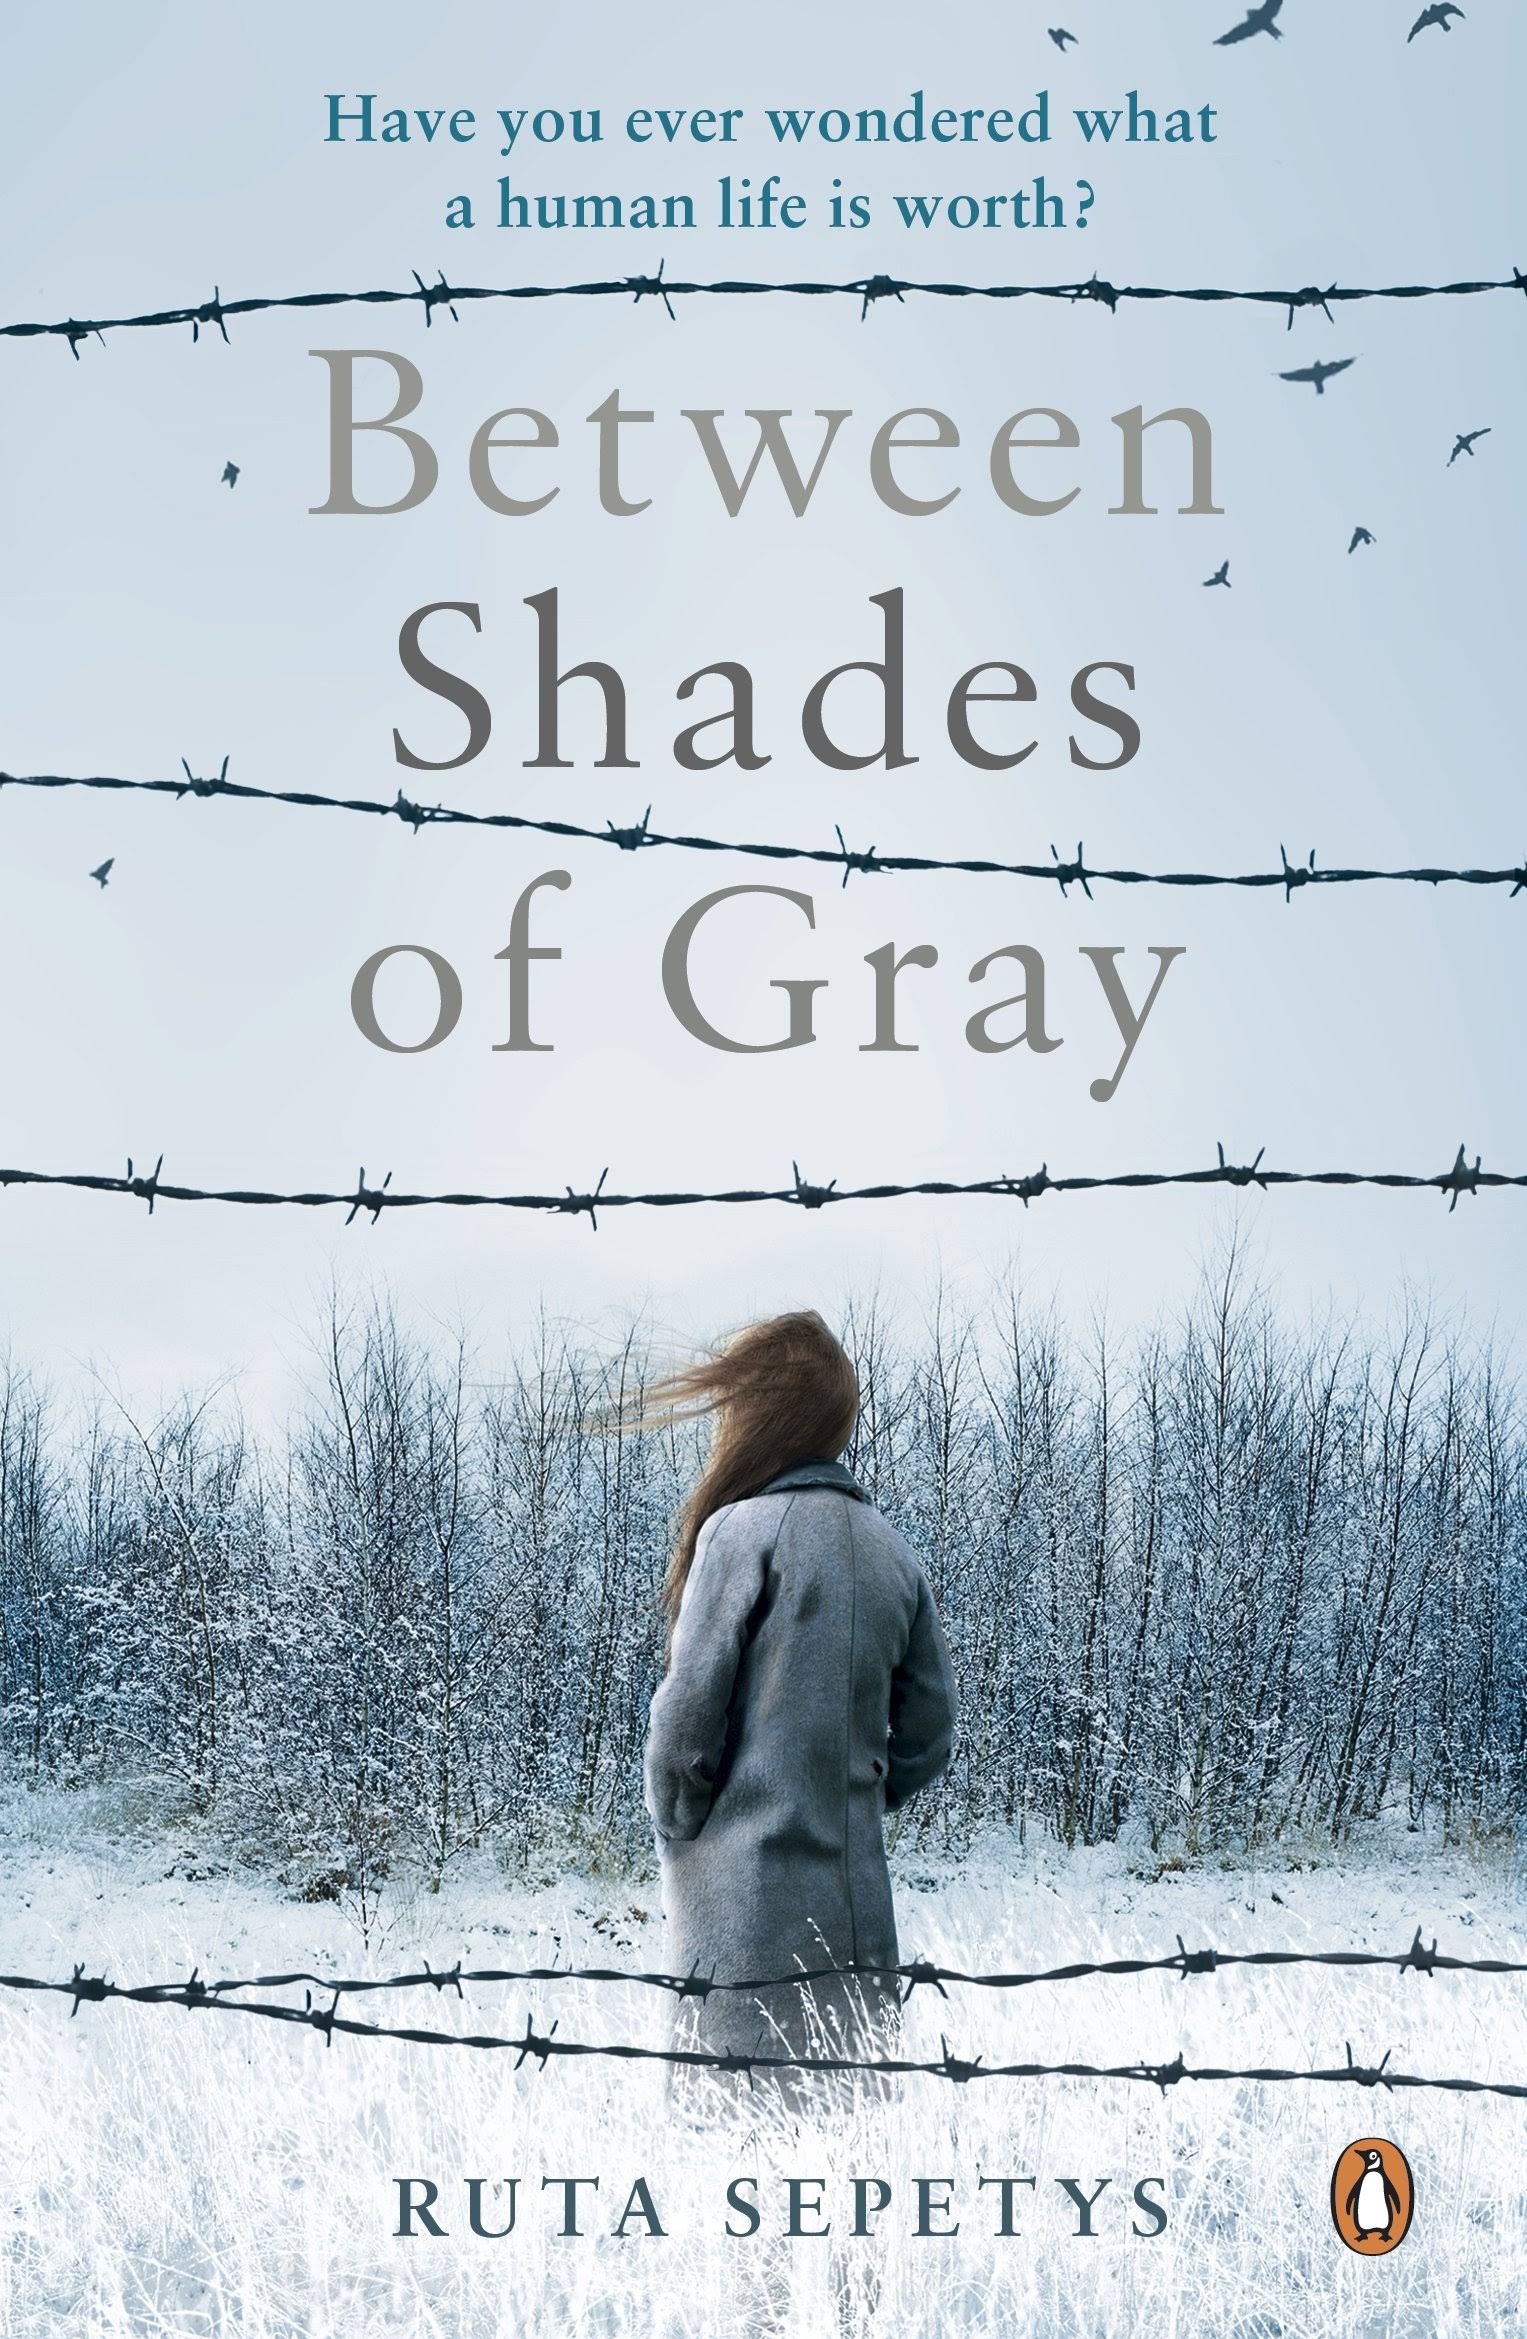 Between Shades of Gray [Book]